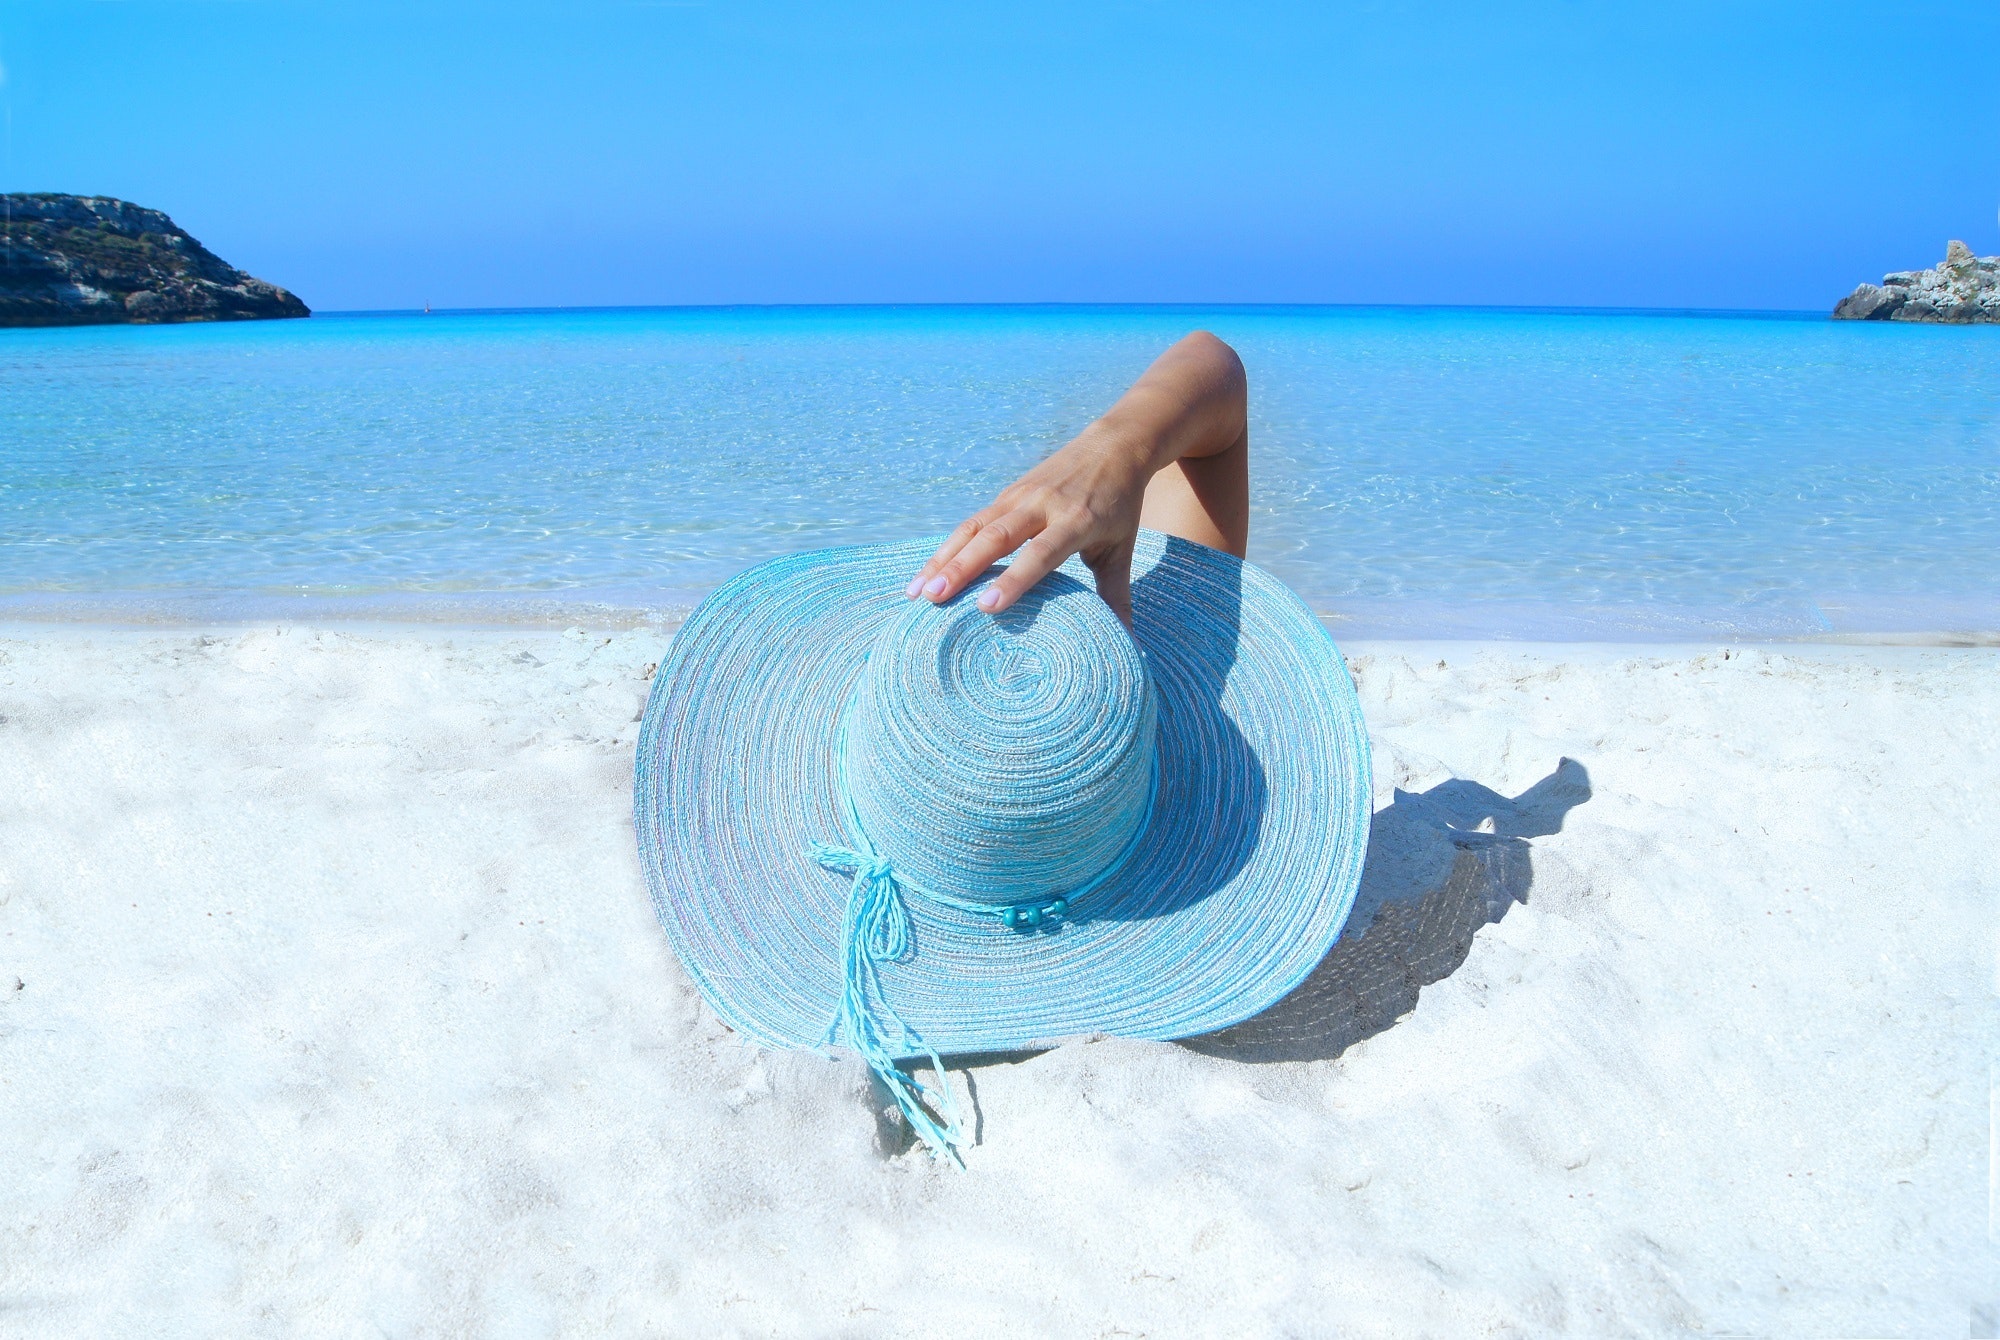 Blue Sun Hat, Beach, Blue, Female, Hand, HQ Photo